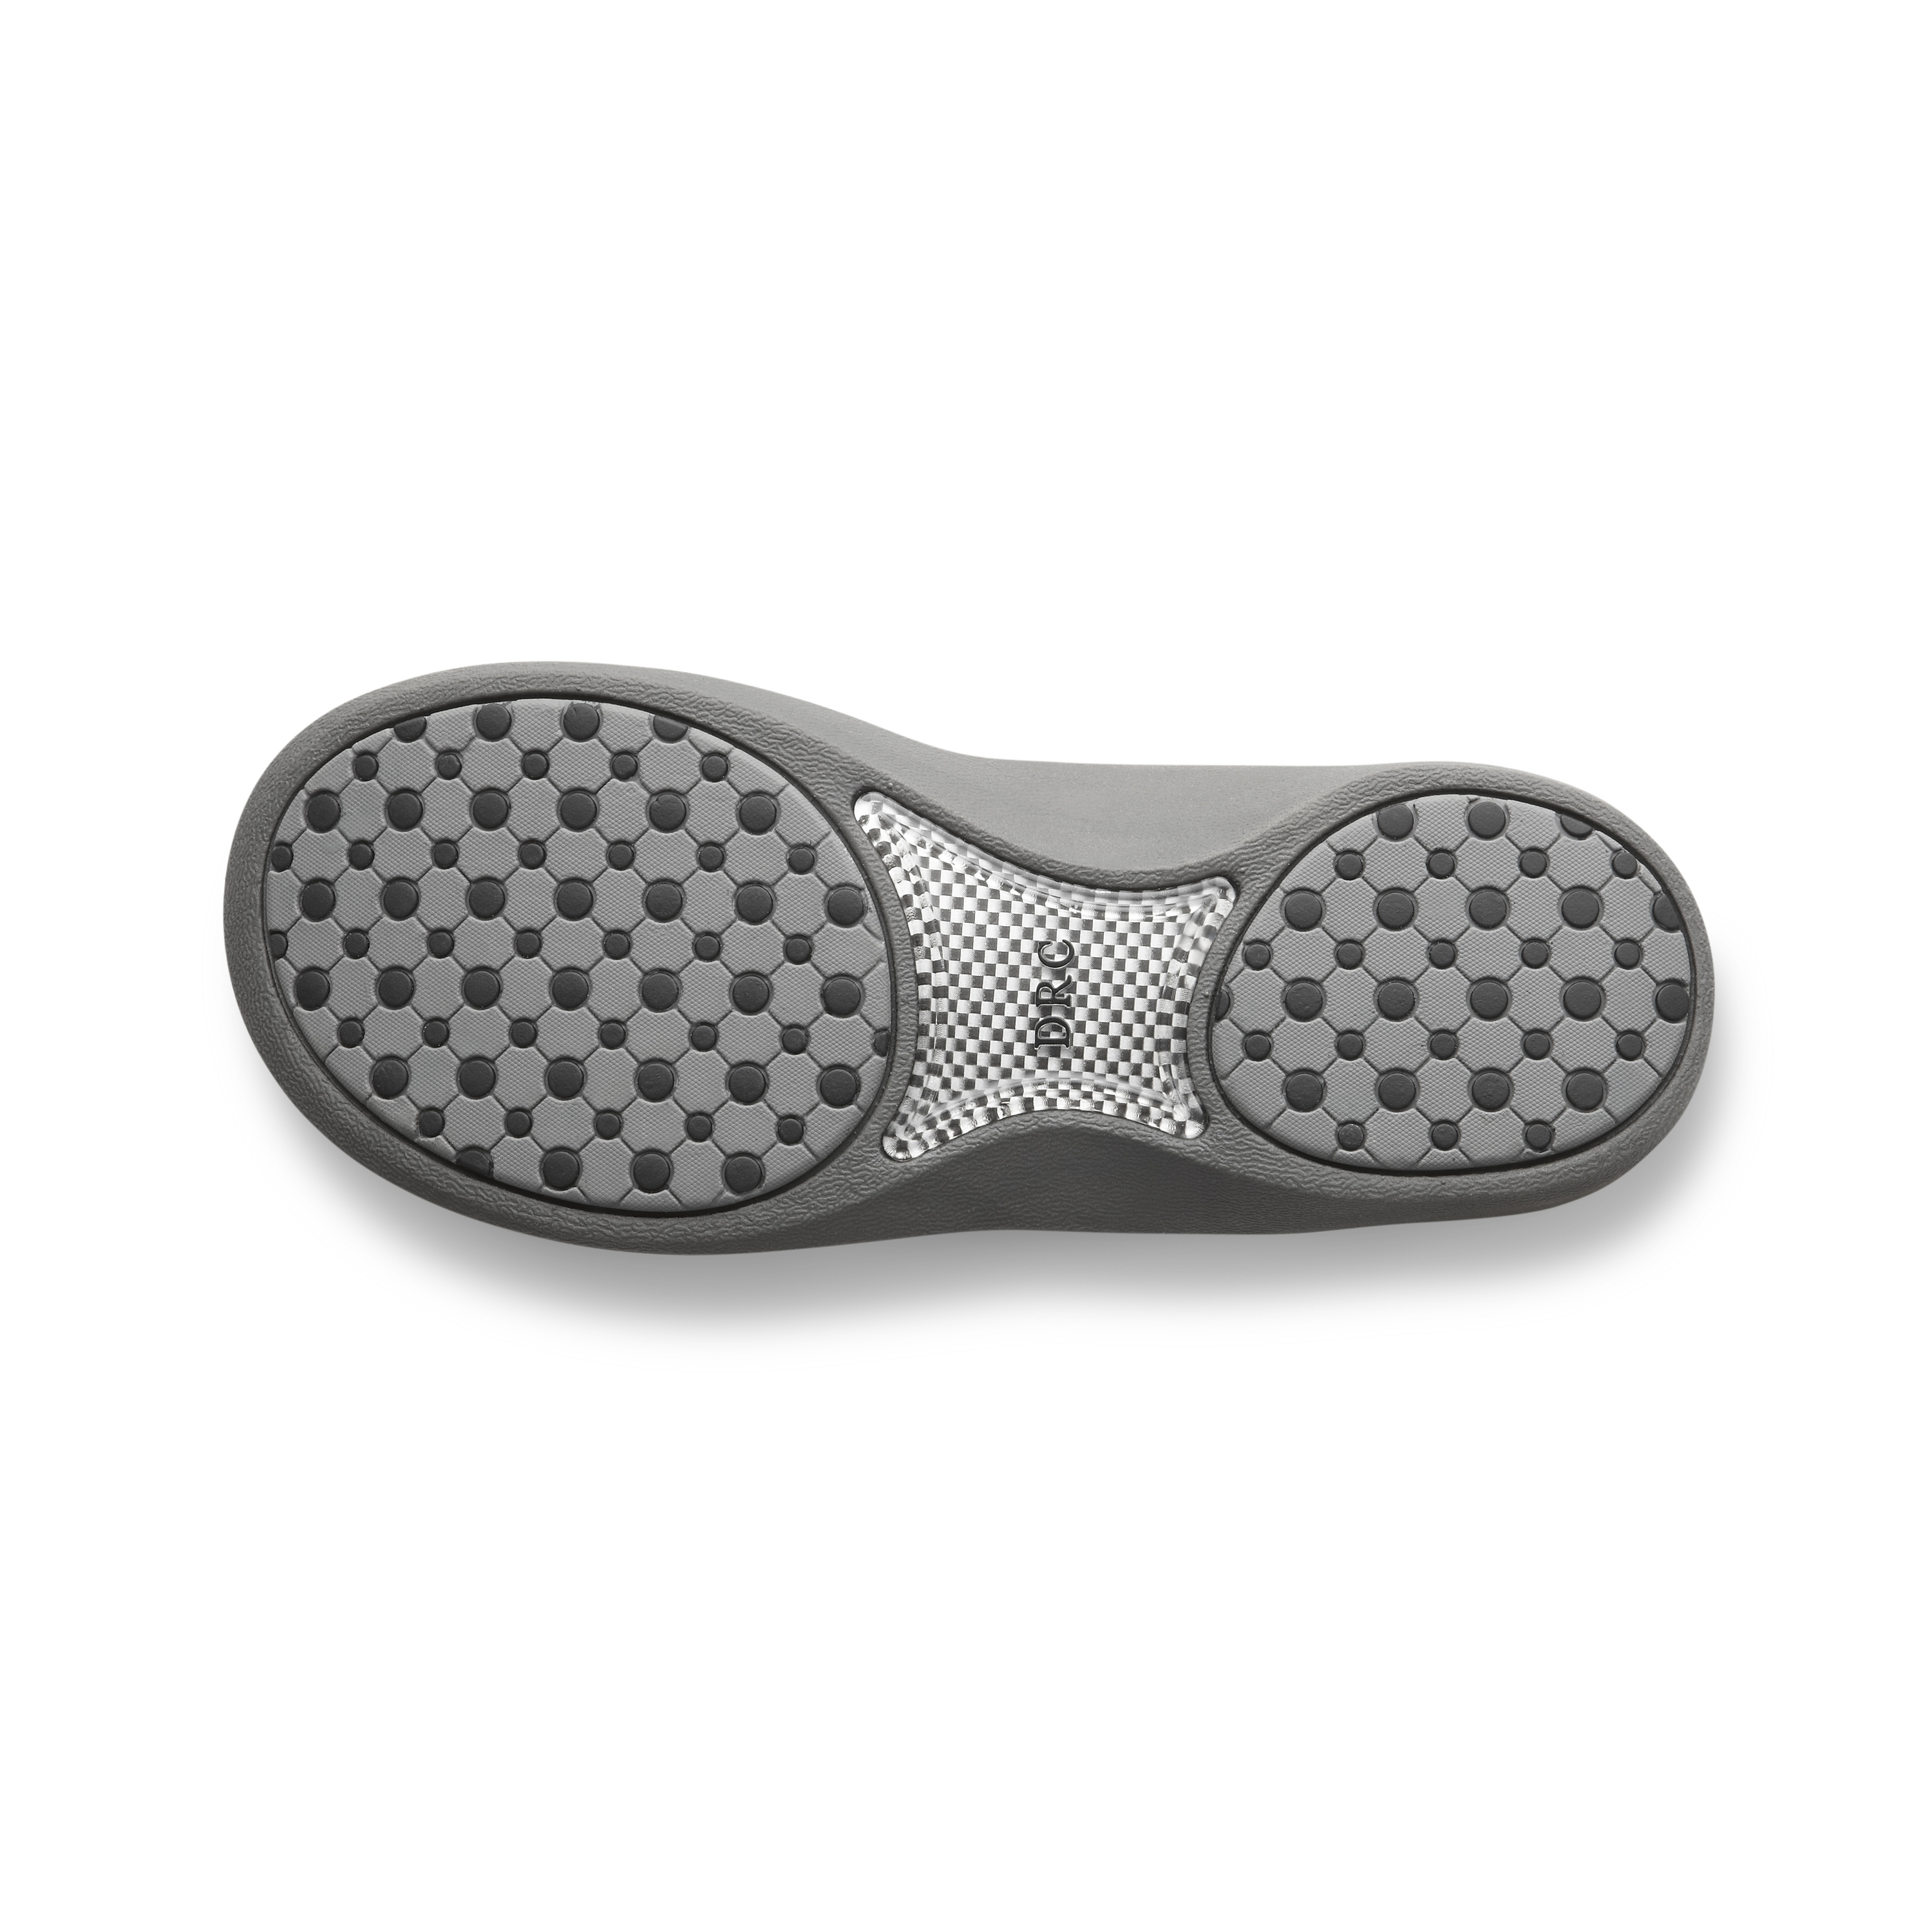 Zusatzbild DR. COMFORT® Shannon schwarz, unten, Orthopädische Schuhe, Leichter Sommerschuh mit eingearbeitetem Fußbett für mehr Stabilität